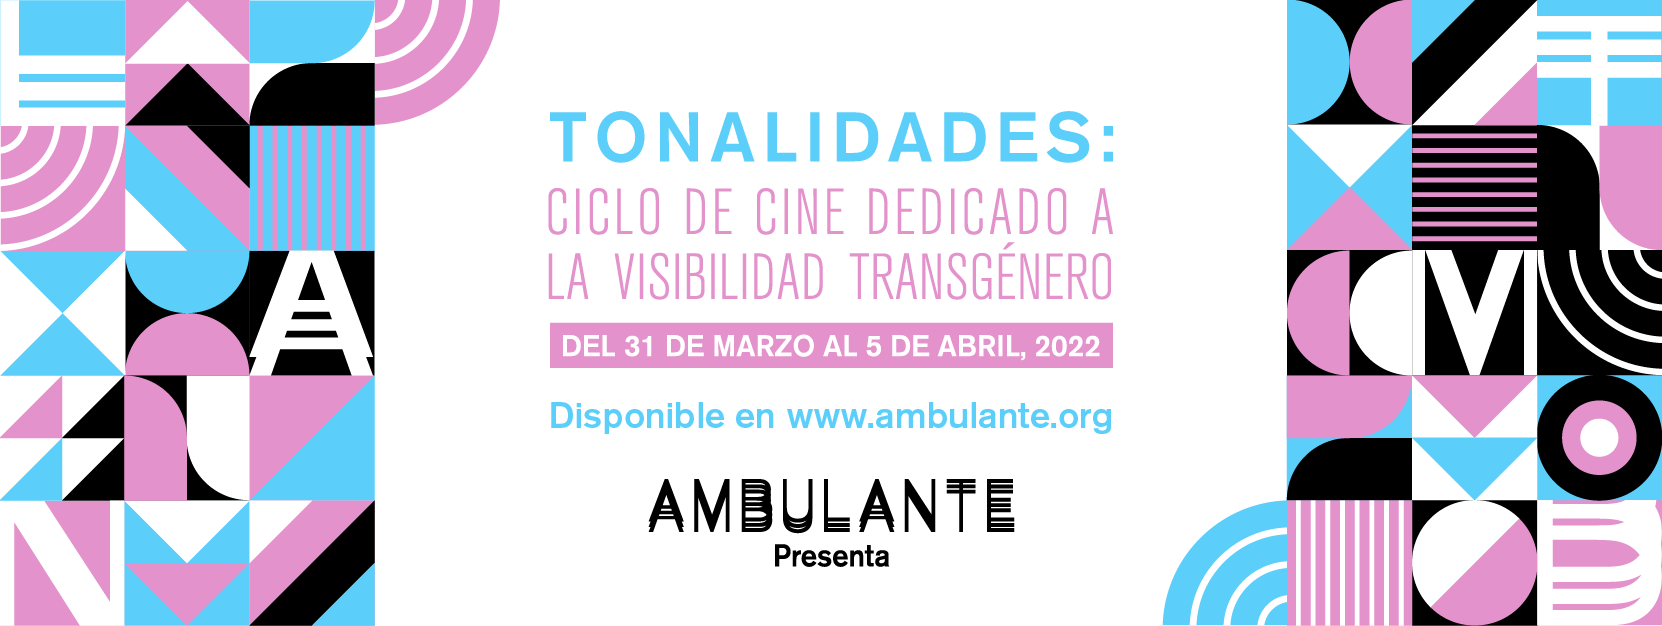 “Tonalidades” es un ciclo de cine dedicado a la visibilidad transgénero